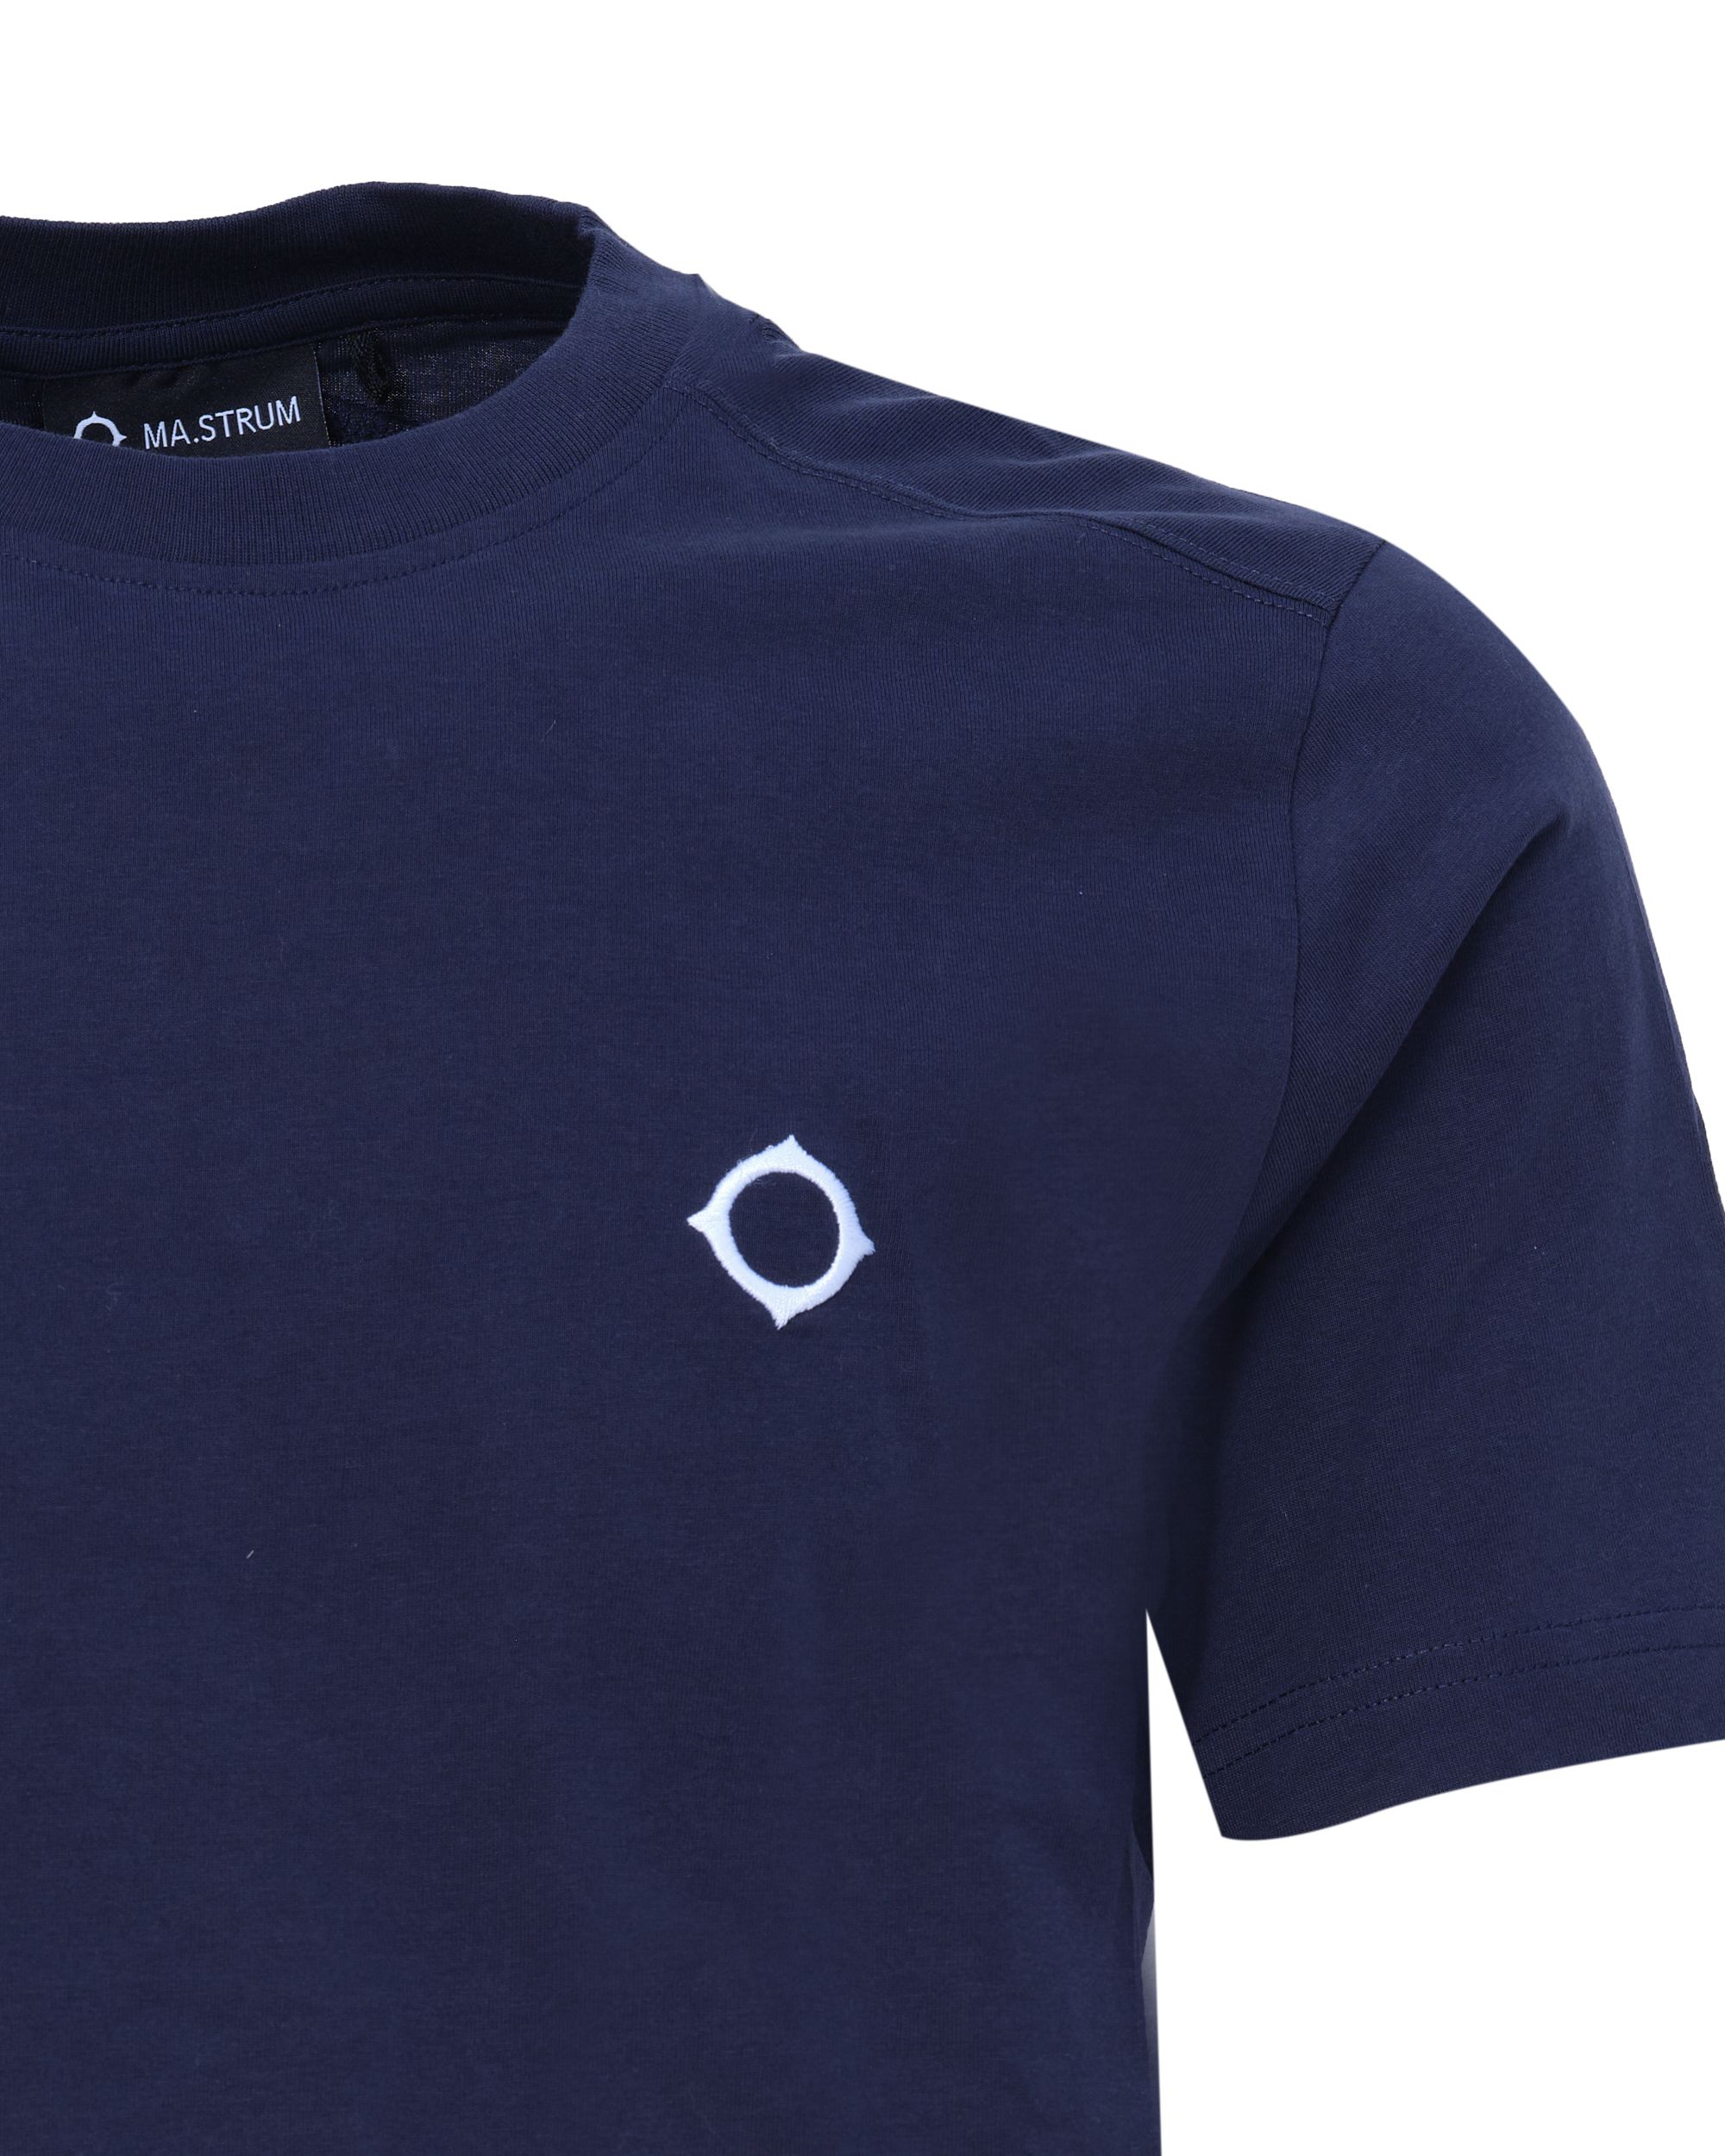 MA.STRUM T-shirt KM Donker blauw 081037-001-L